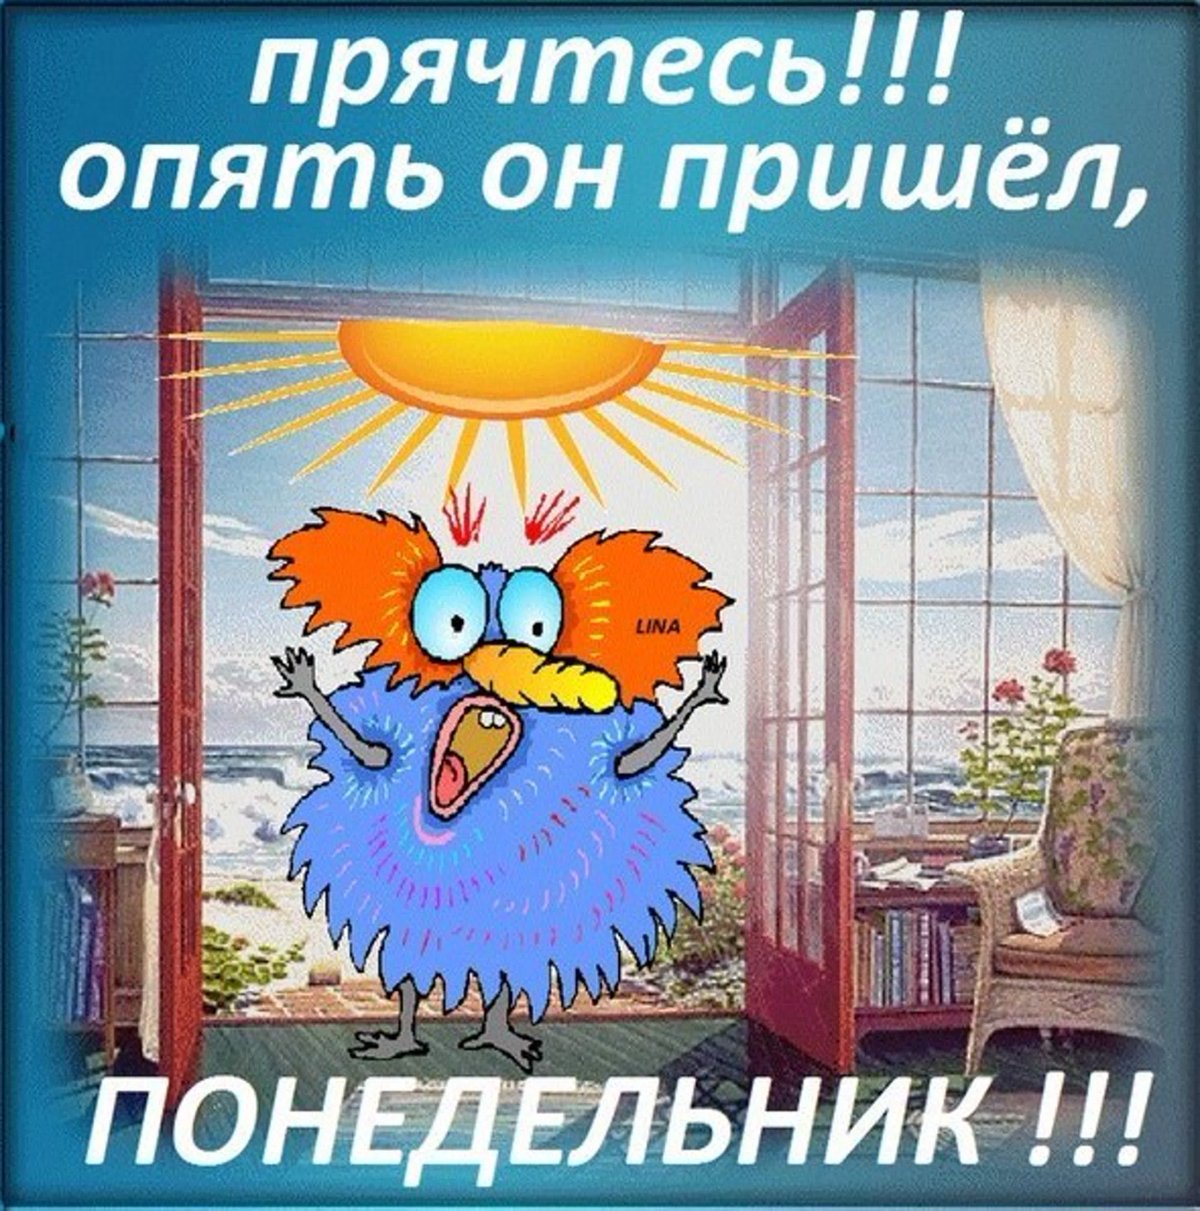 Анимационная гифка с синей птицей, изображающей персонажа, жалующегося на приход понедельника, на фоне комнаты с видом из окна.